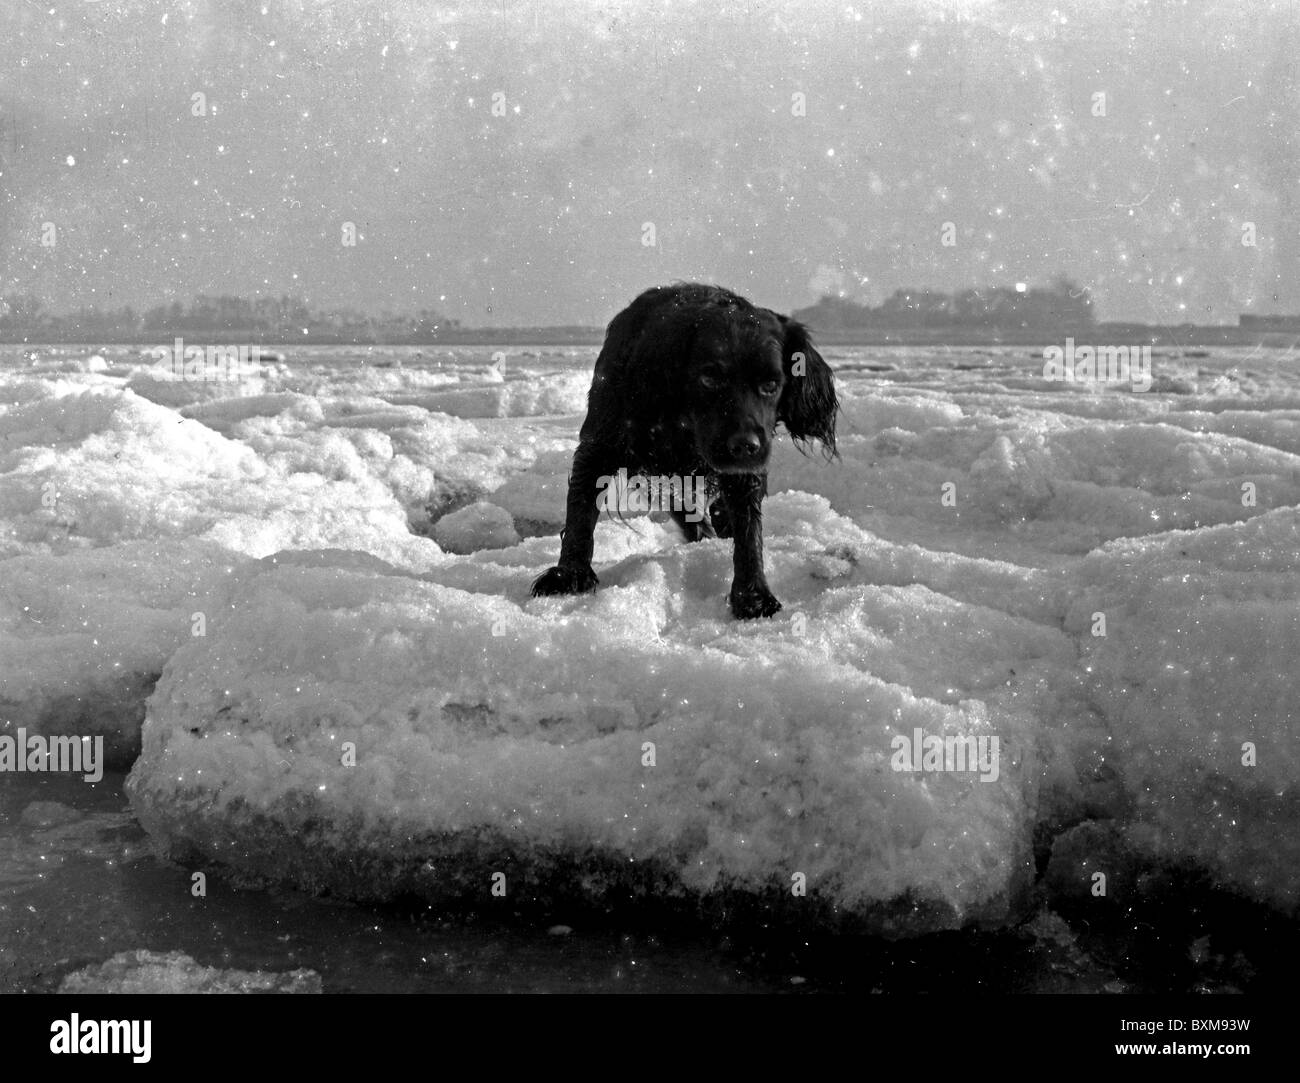 IL GRANDE CONGELAMENTO. Inverno del 1962-63 a Cleethorpes, Humber estuario., Regno Unito. Il mare si è congelato. Il ghiaccio gallica diciotto pollici spesso. Cane su ghiaccio galleggianti. Foto Stock